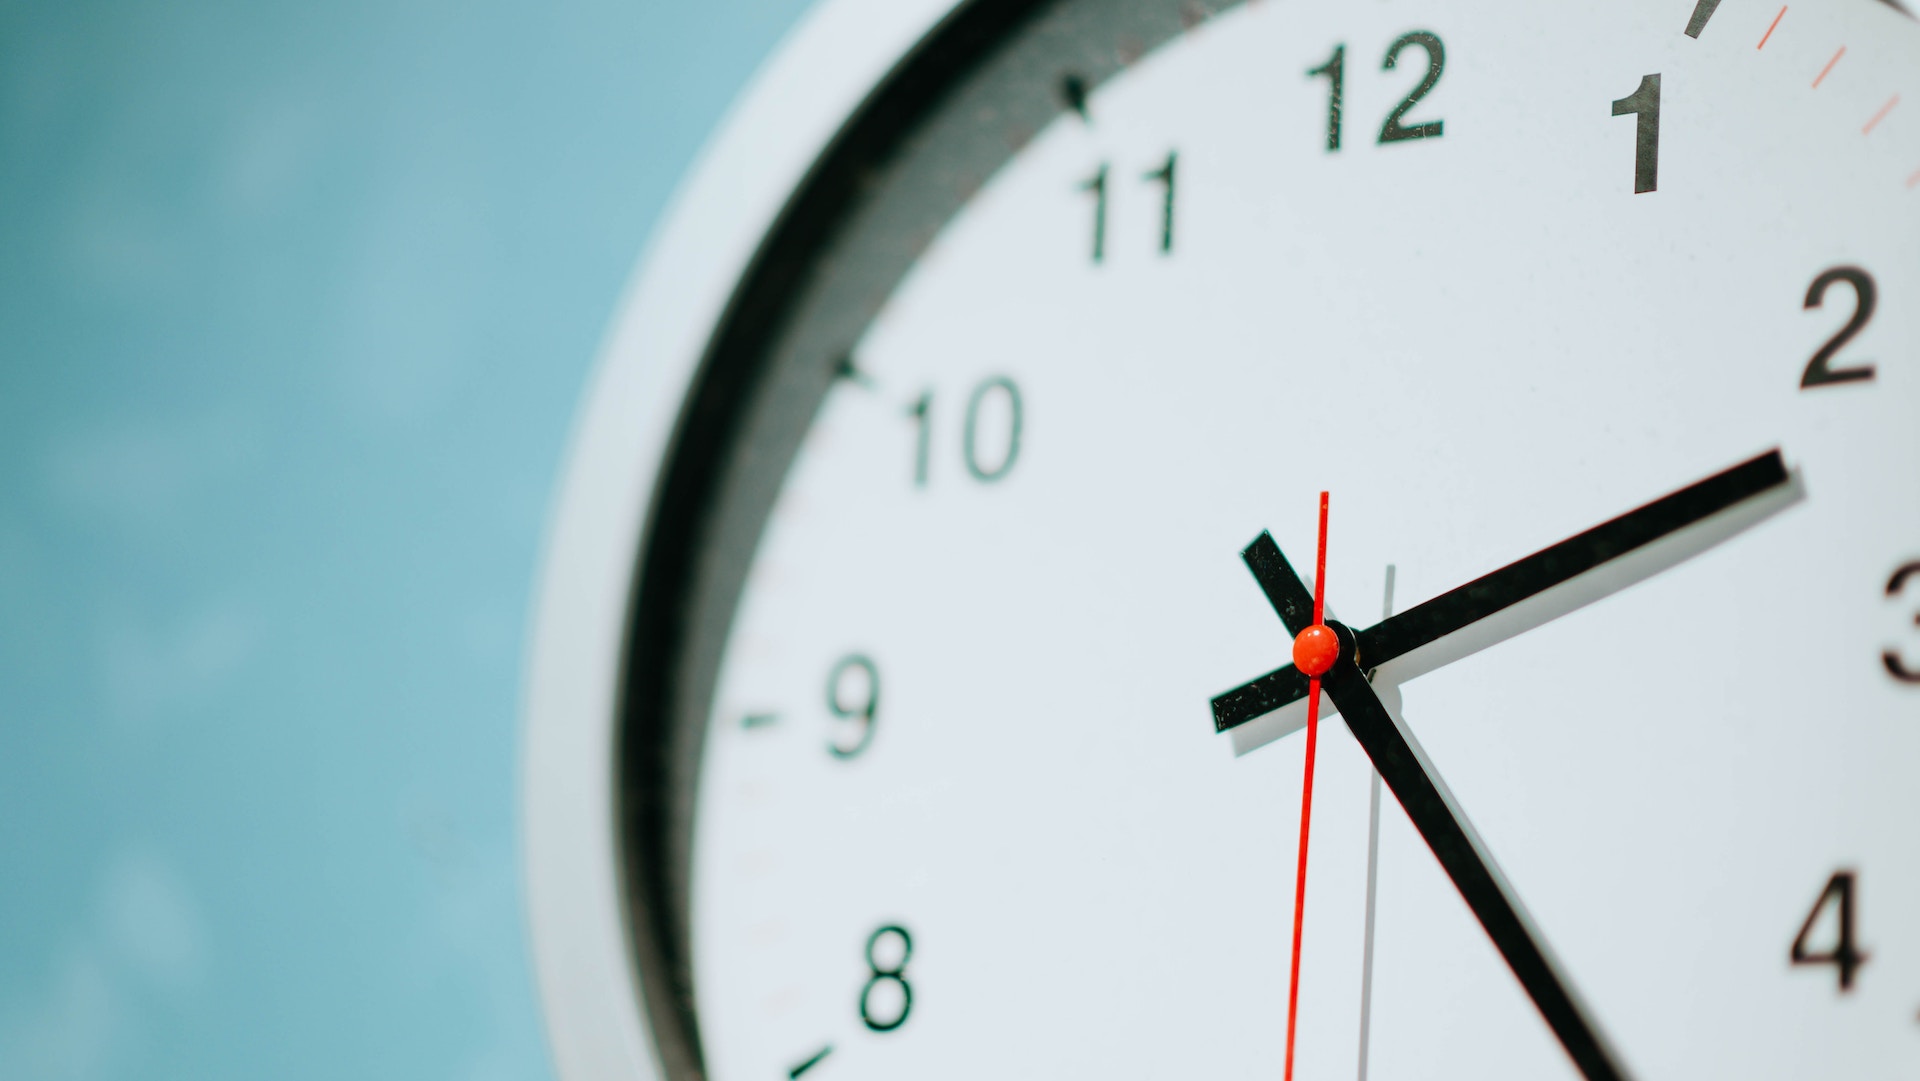 Cambio de hora: Europa adelanta los relojes esta madrugada